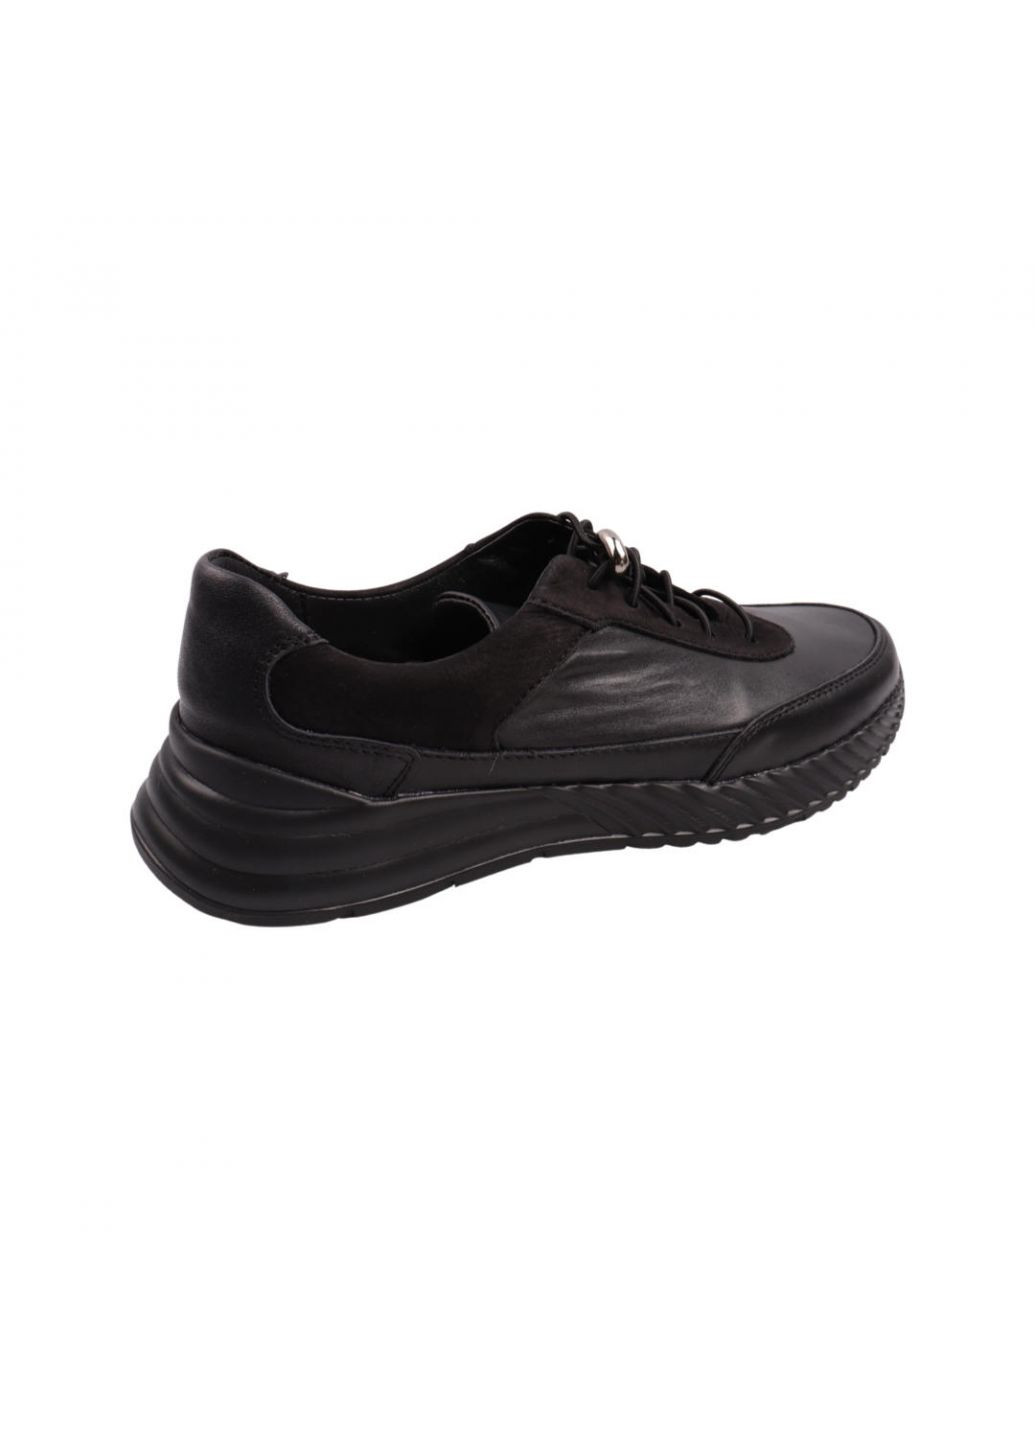 Чорні кросівки чоловічі чорні натуральна шкіра Vadrus 420-22DTS